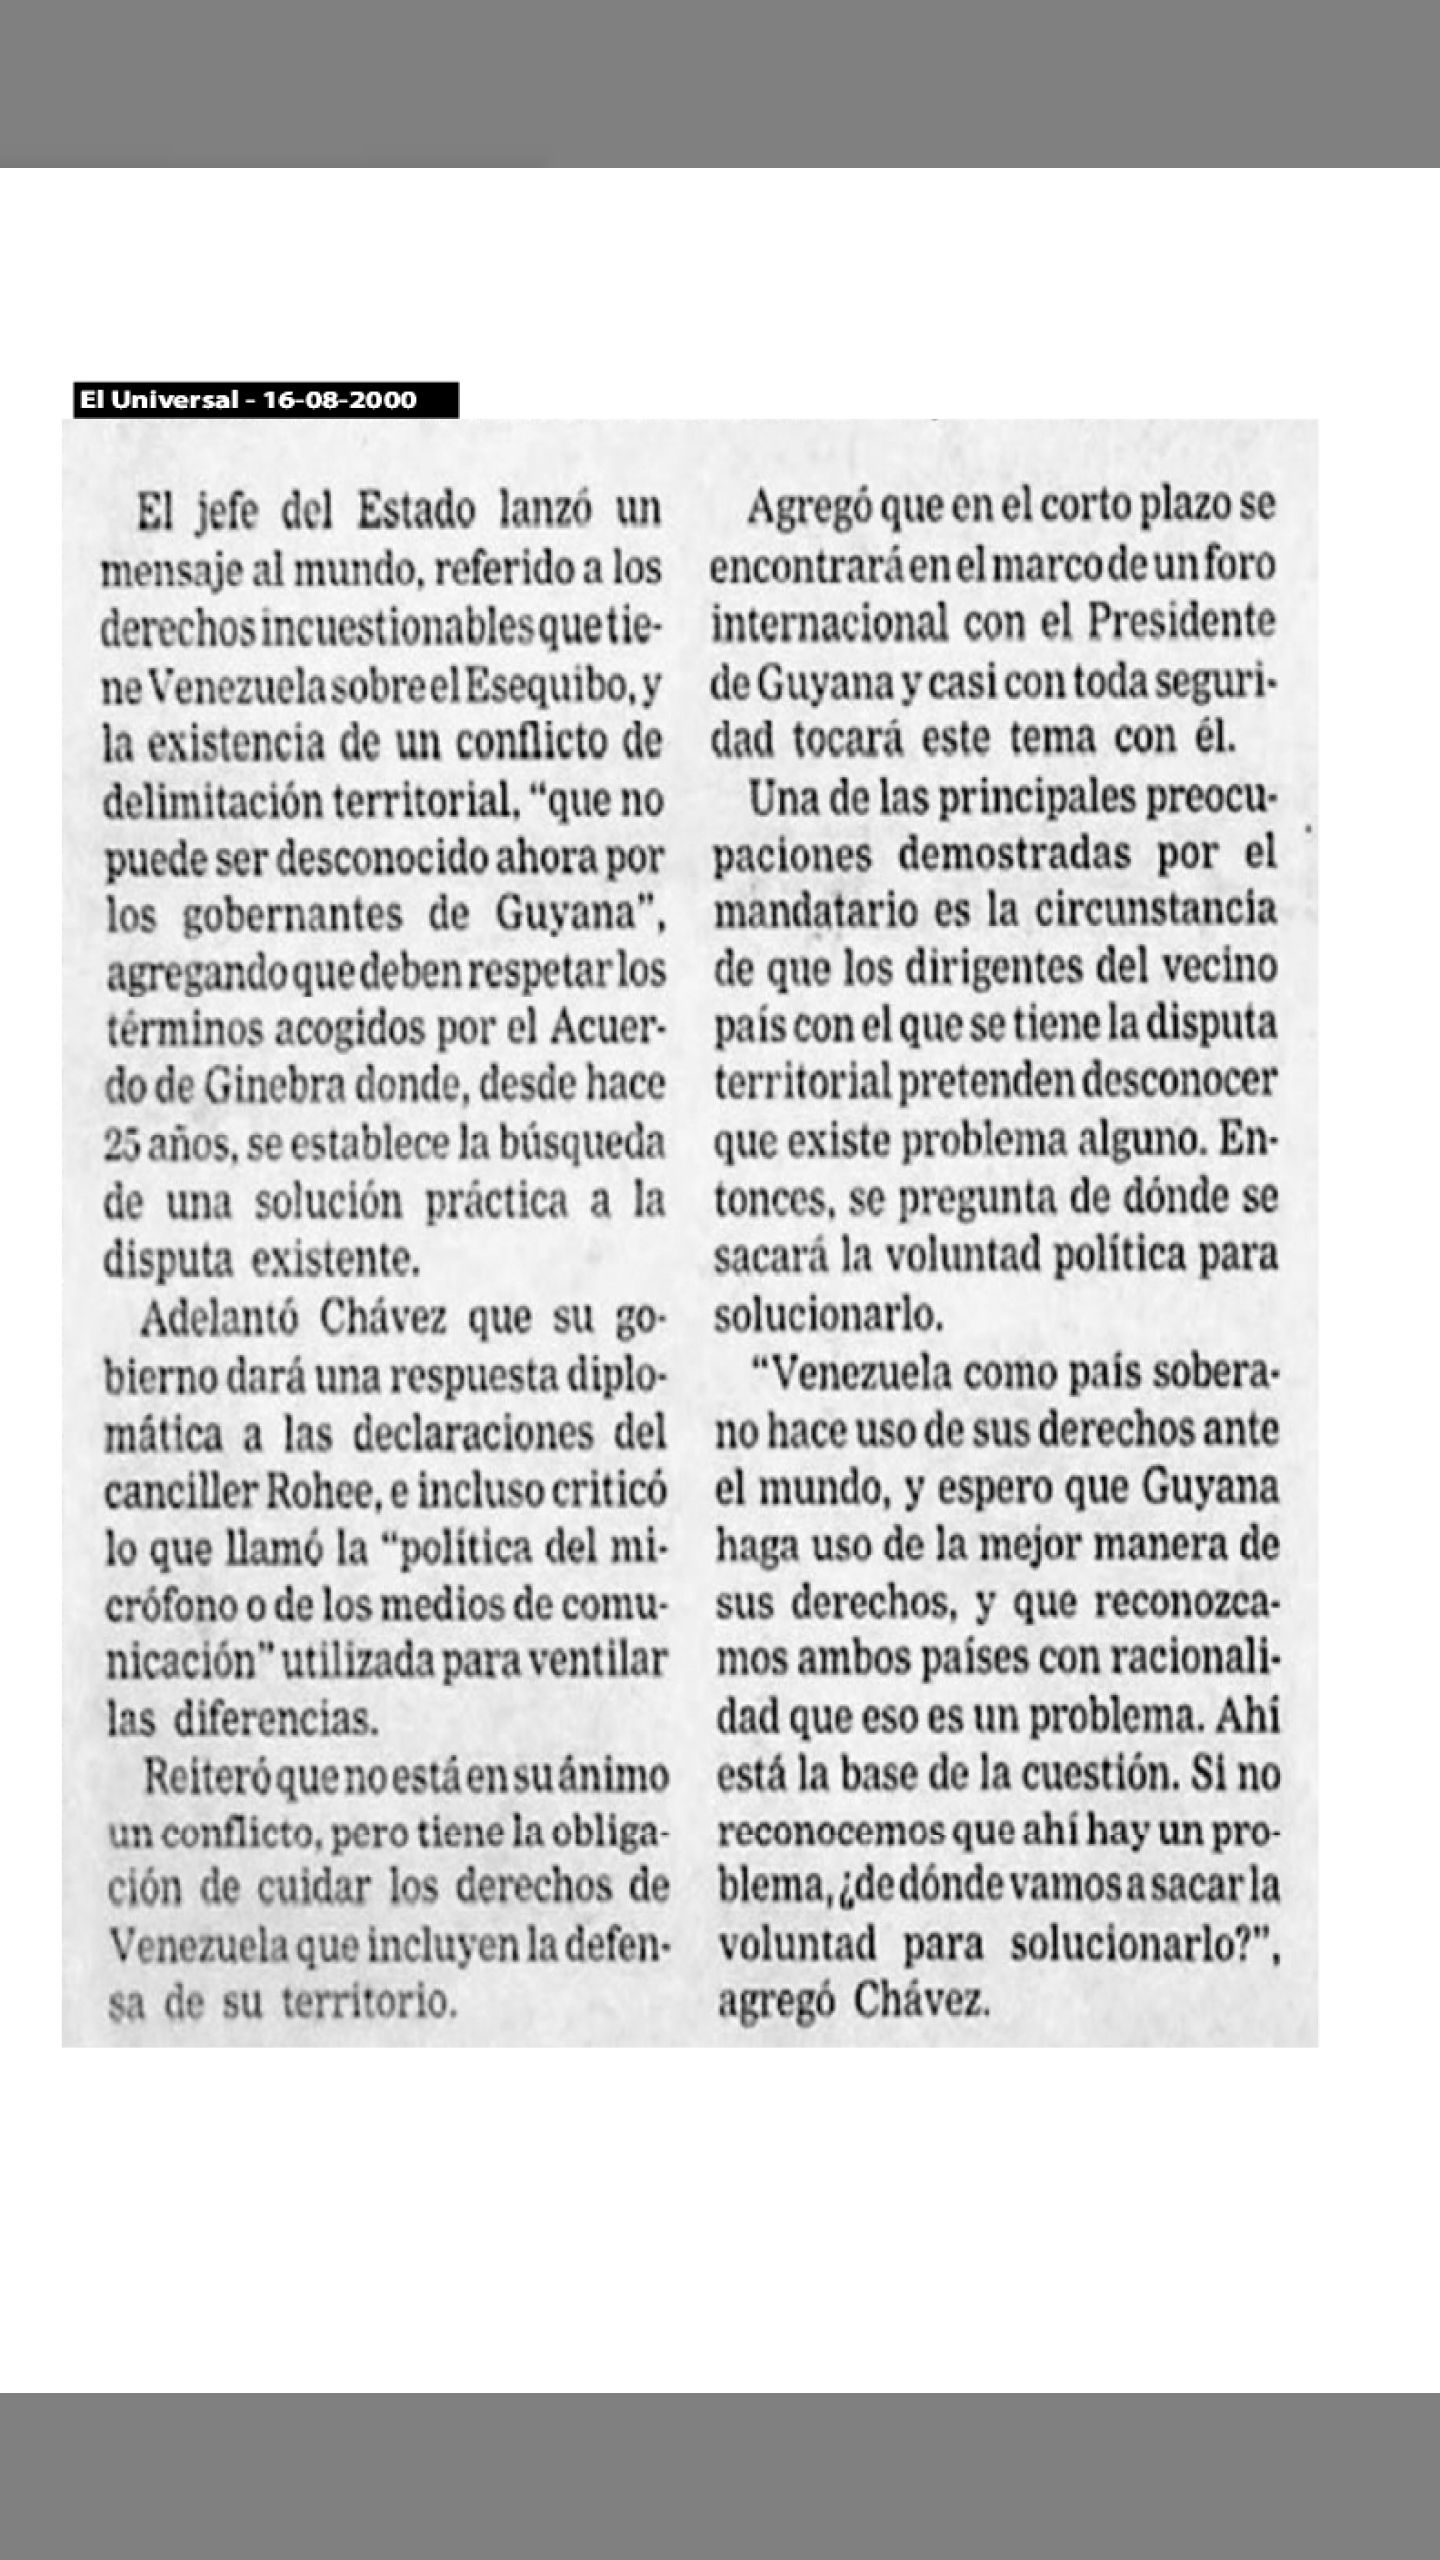 Así declaró el presidente Chávez sobre los Derechos Incuestionables de Venezuela sobre la Guayana Esequiba